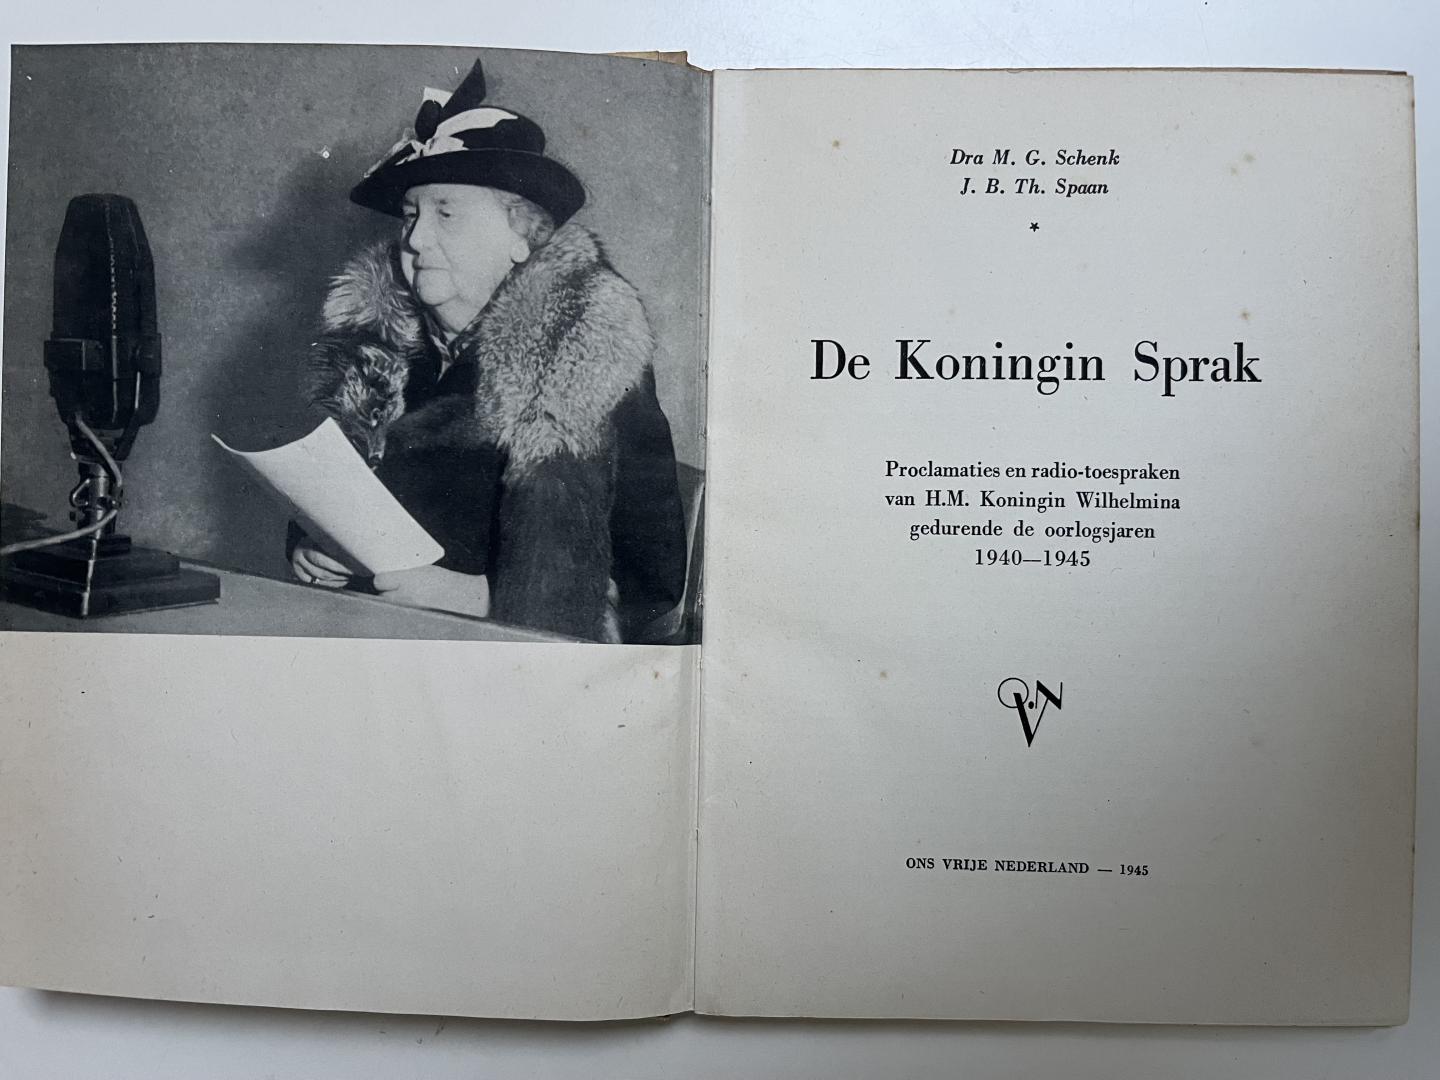 Wilhelmina, koningin (M.G. Schenk (dra), J.B.Th. Spaan) - DE KONINGIN SPRAK. Proclamaties en radio-toespraken van H.M. Koningin Wilhelmina gedurende de oorlogsjaren 1940-1945